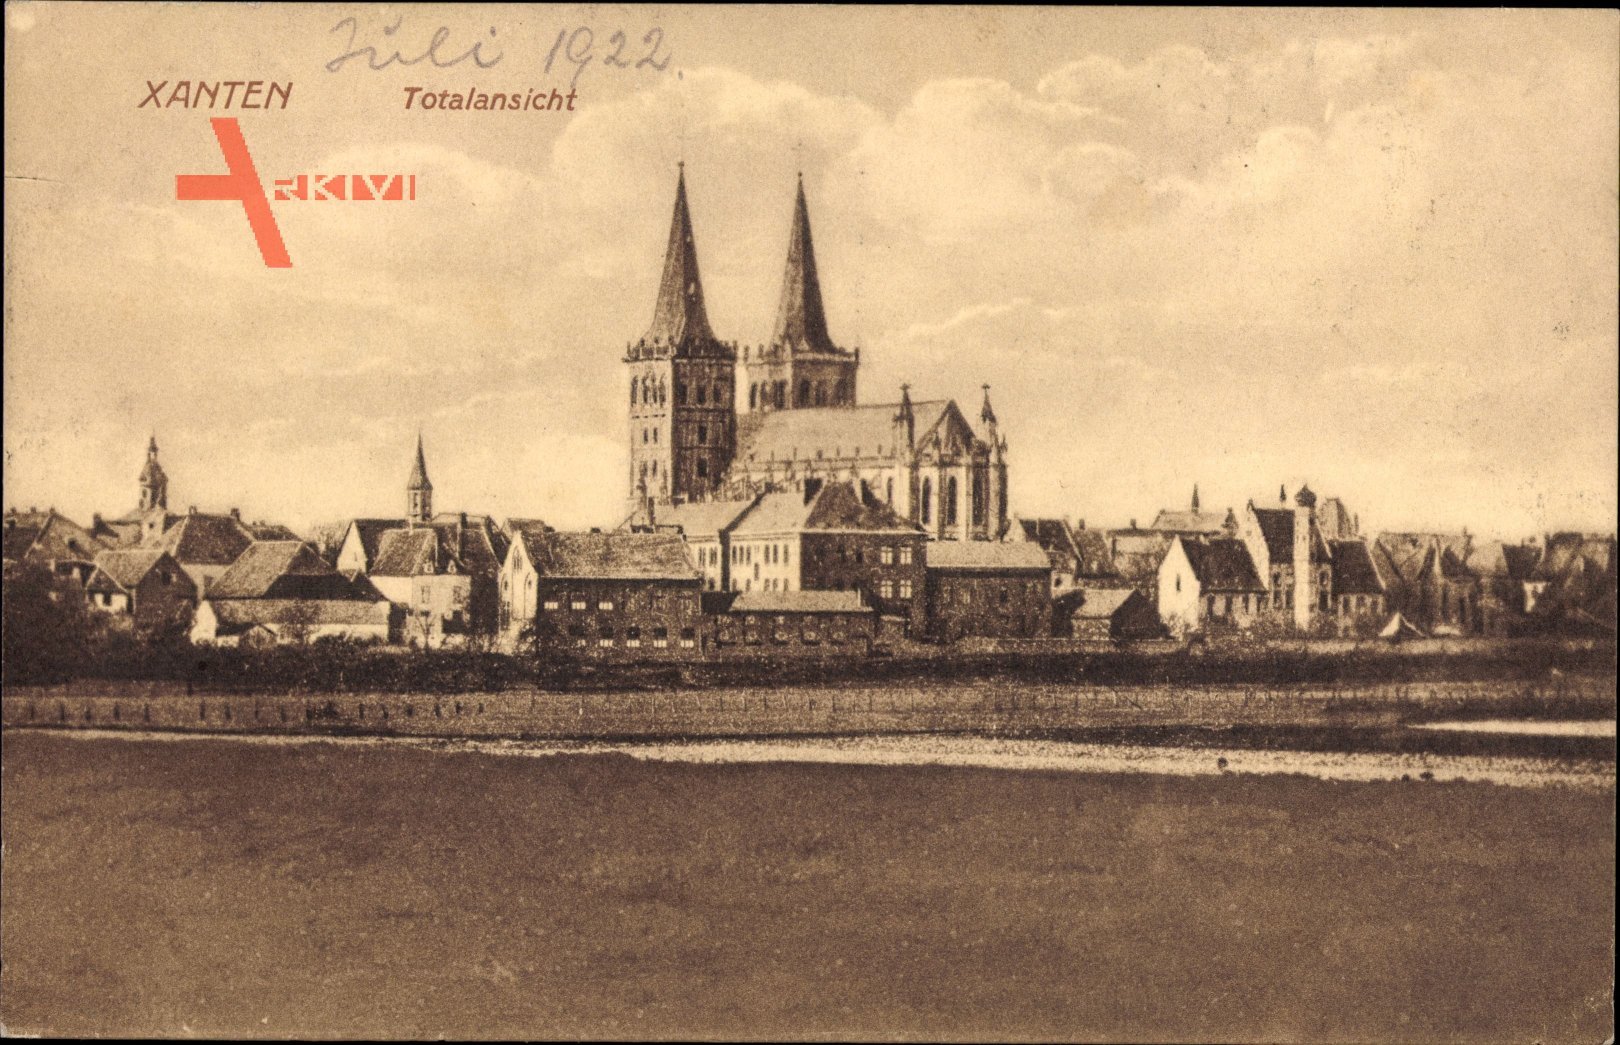 Xanten am Niederrhein, Totalansicht der Ortschaft, Kirche, Häuser